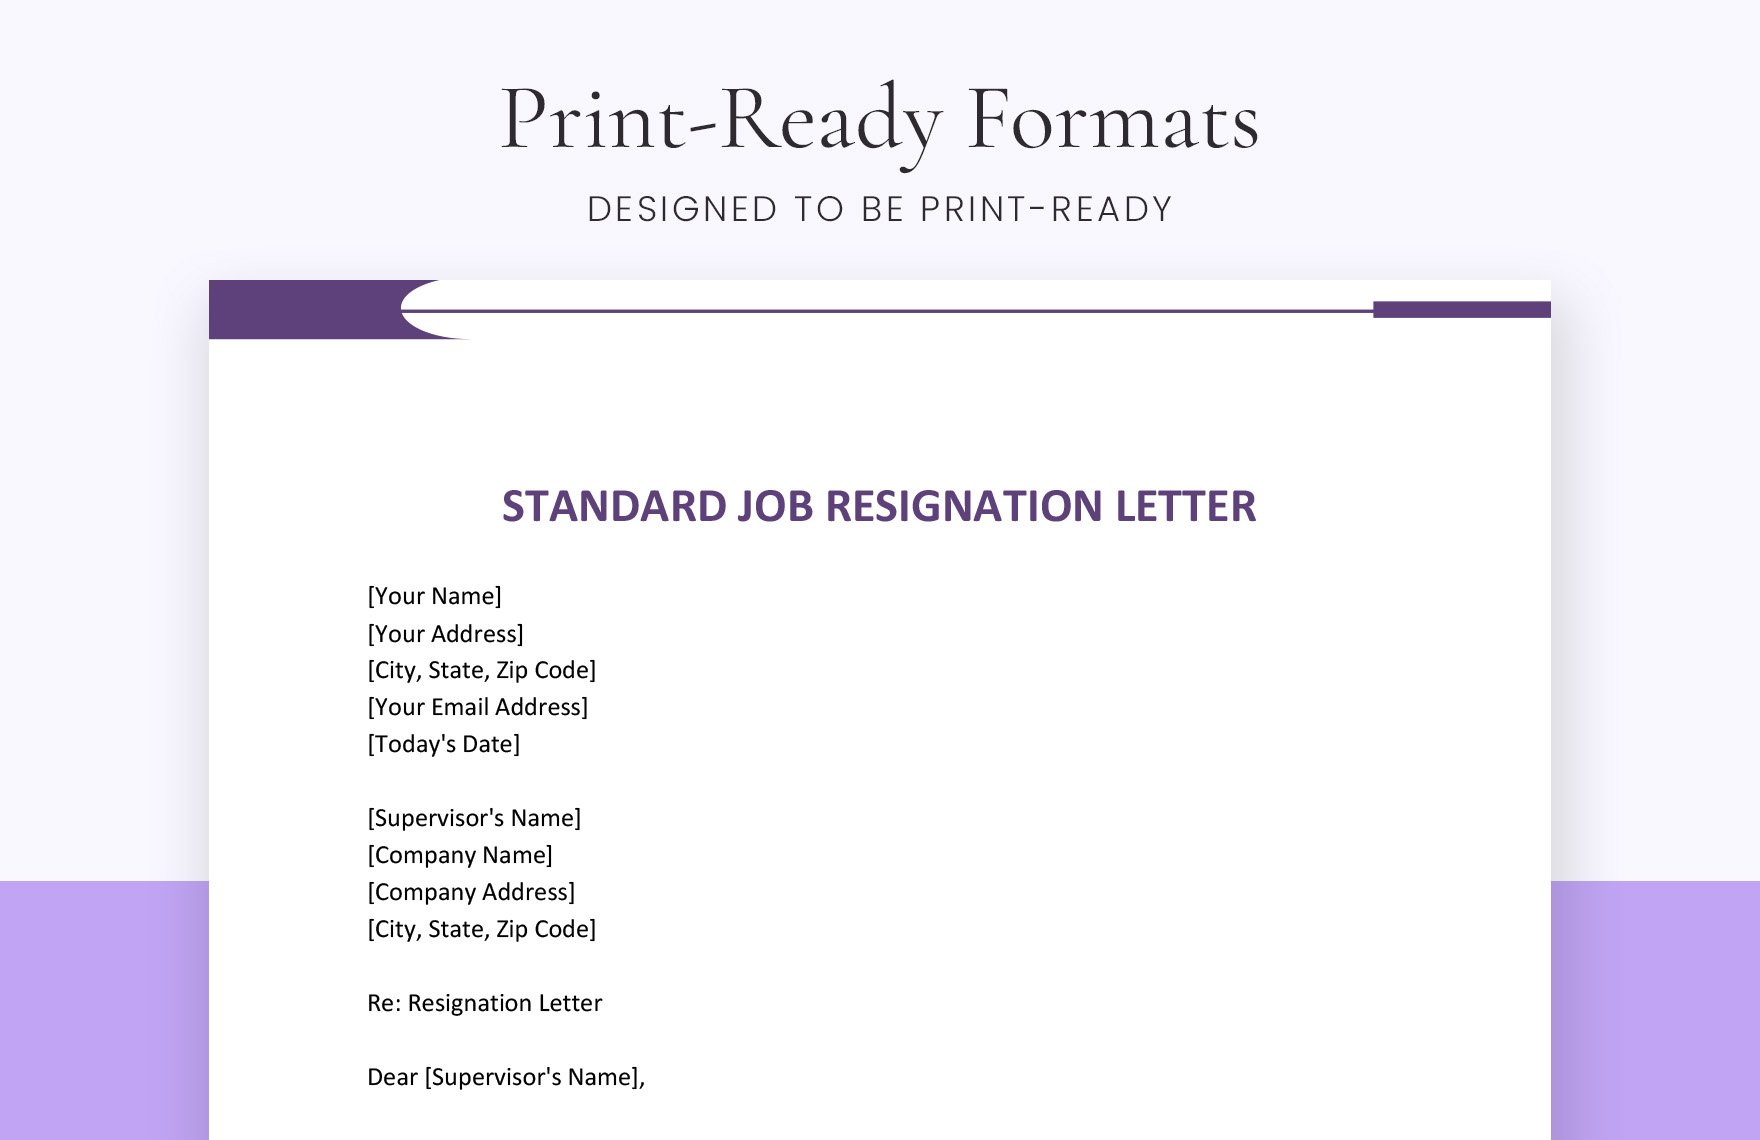 Standard Job Resignation Letter